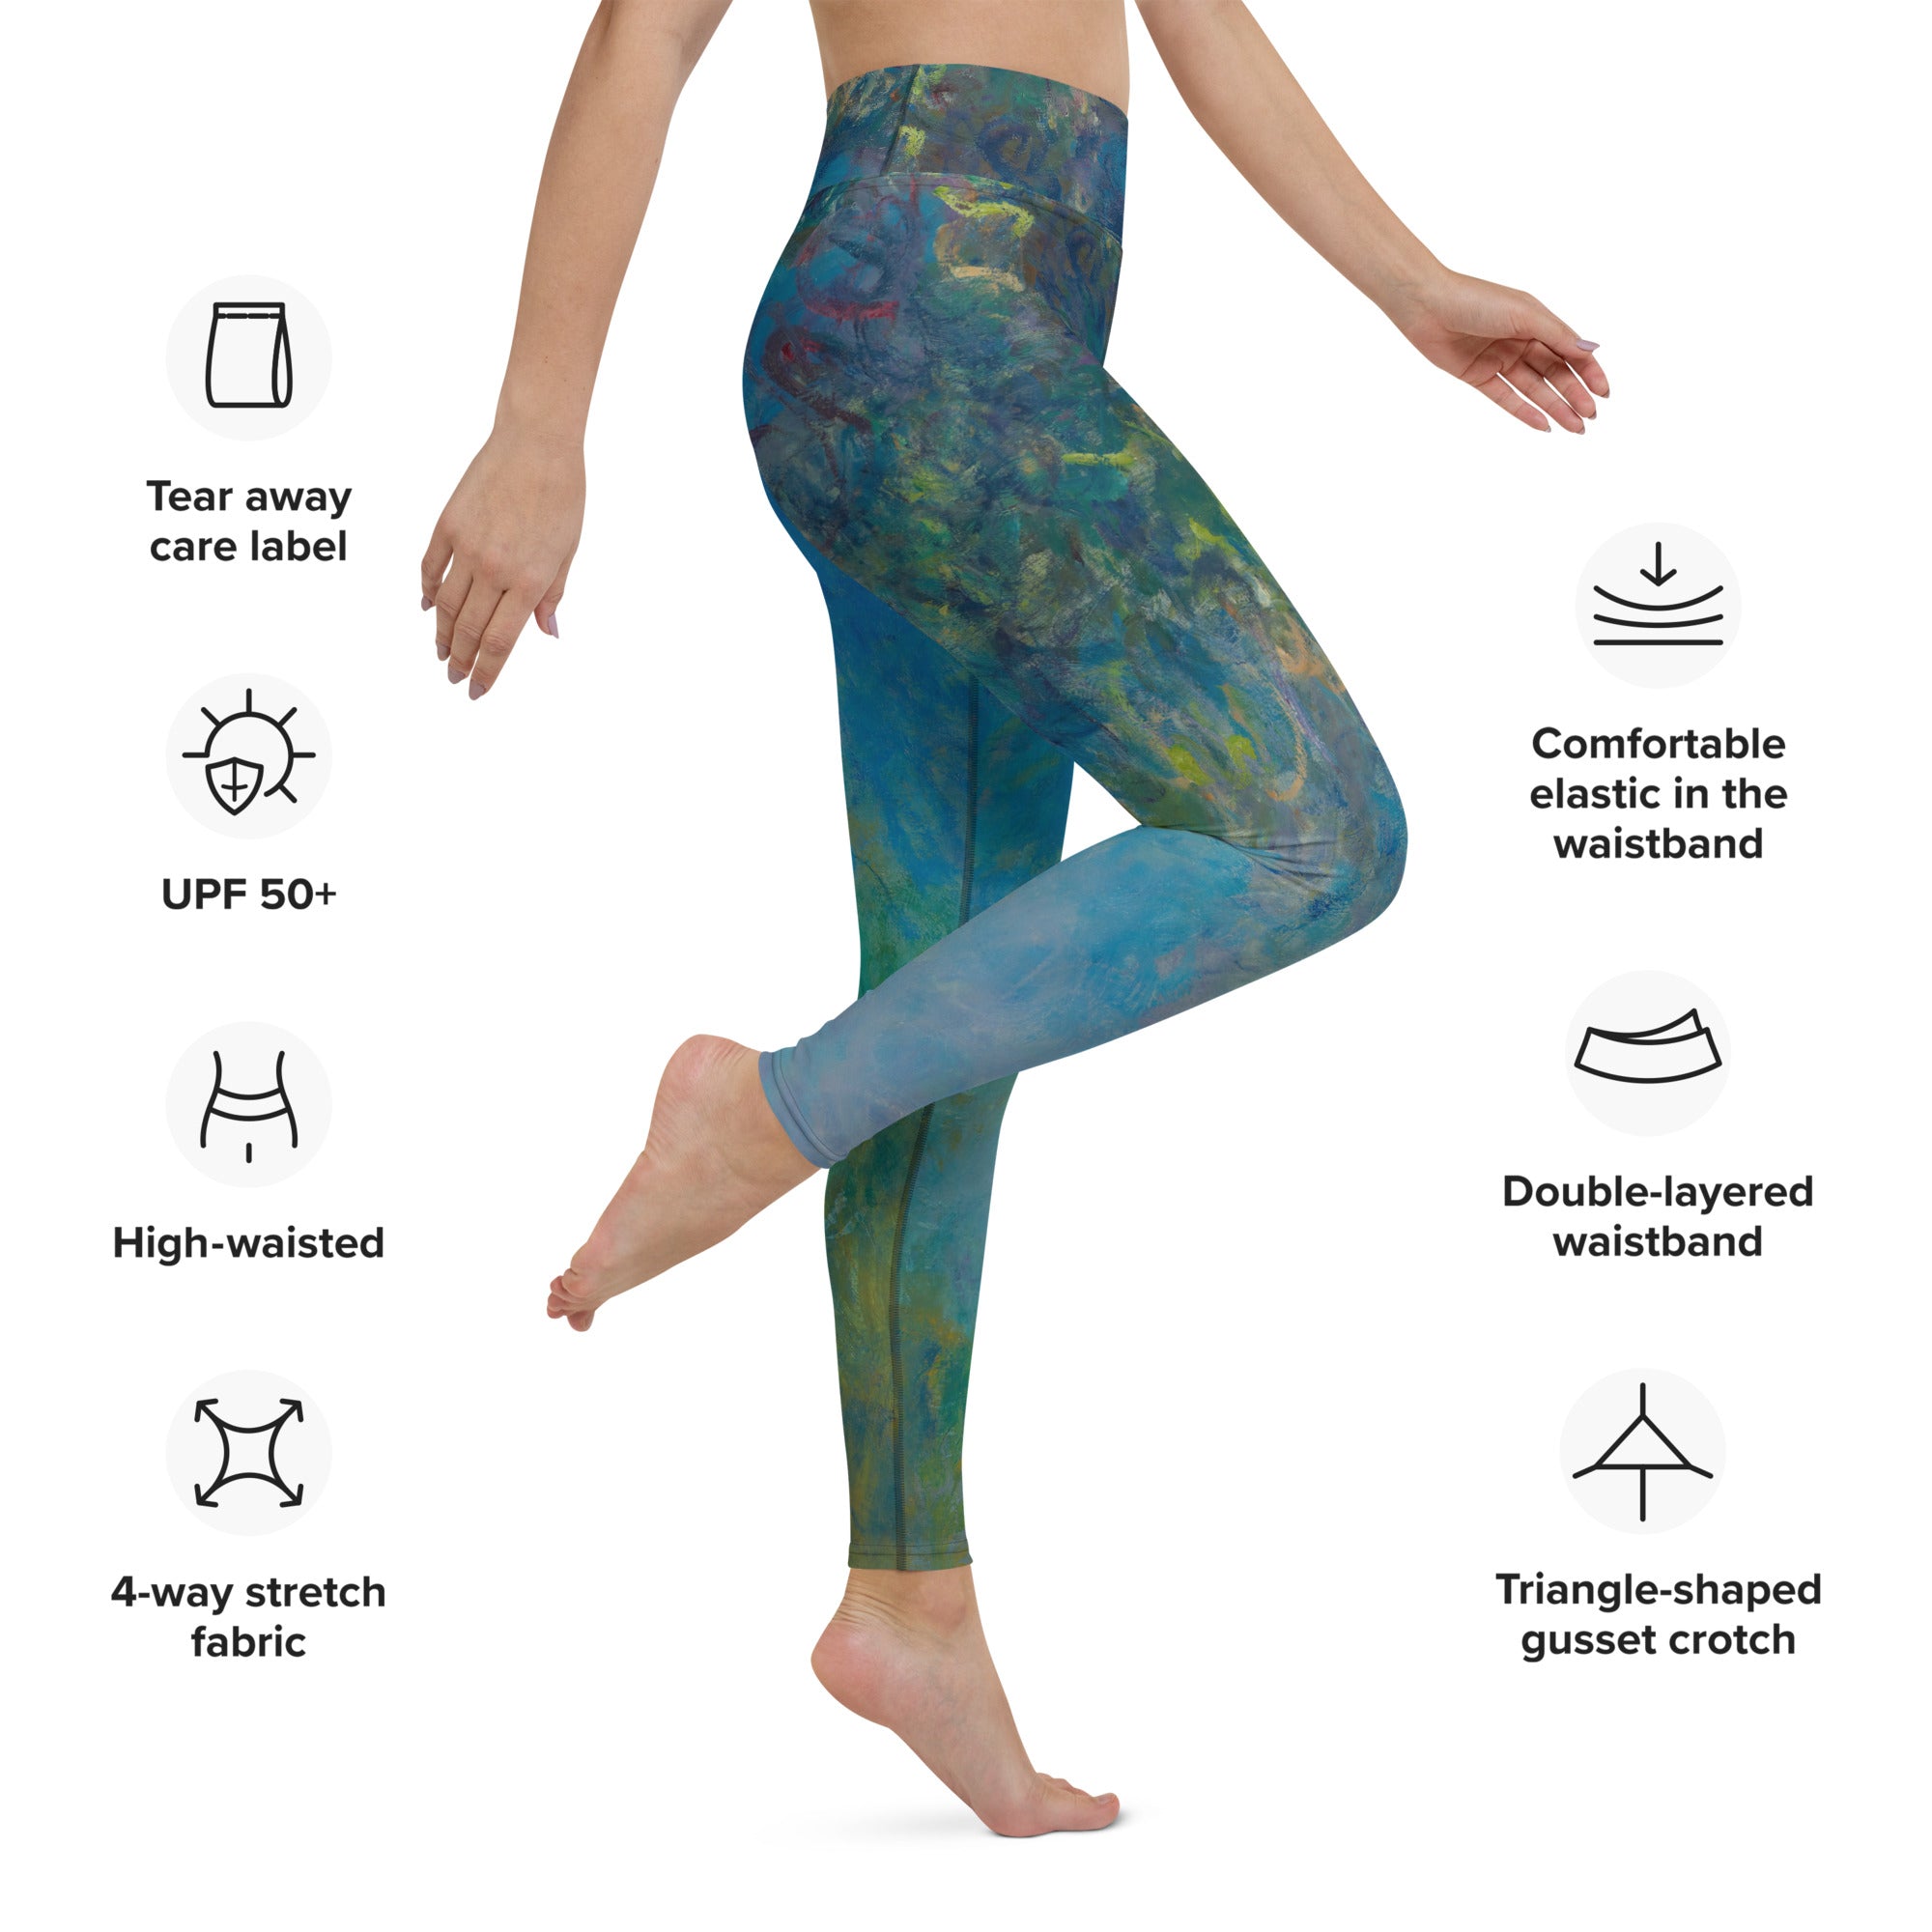 Claude Monet 'Wisteria' berühmtes Gemälde Yoga Leggings | Premium Art Yoga Leggings